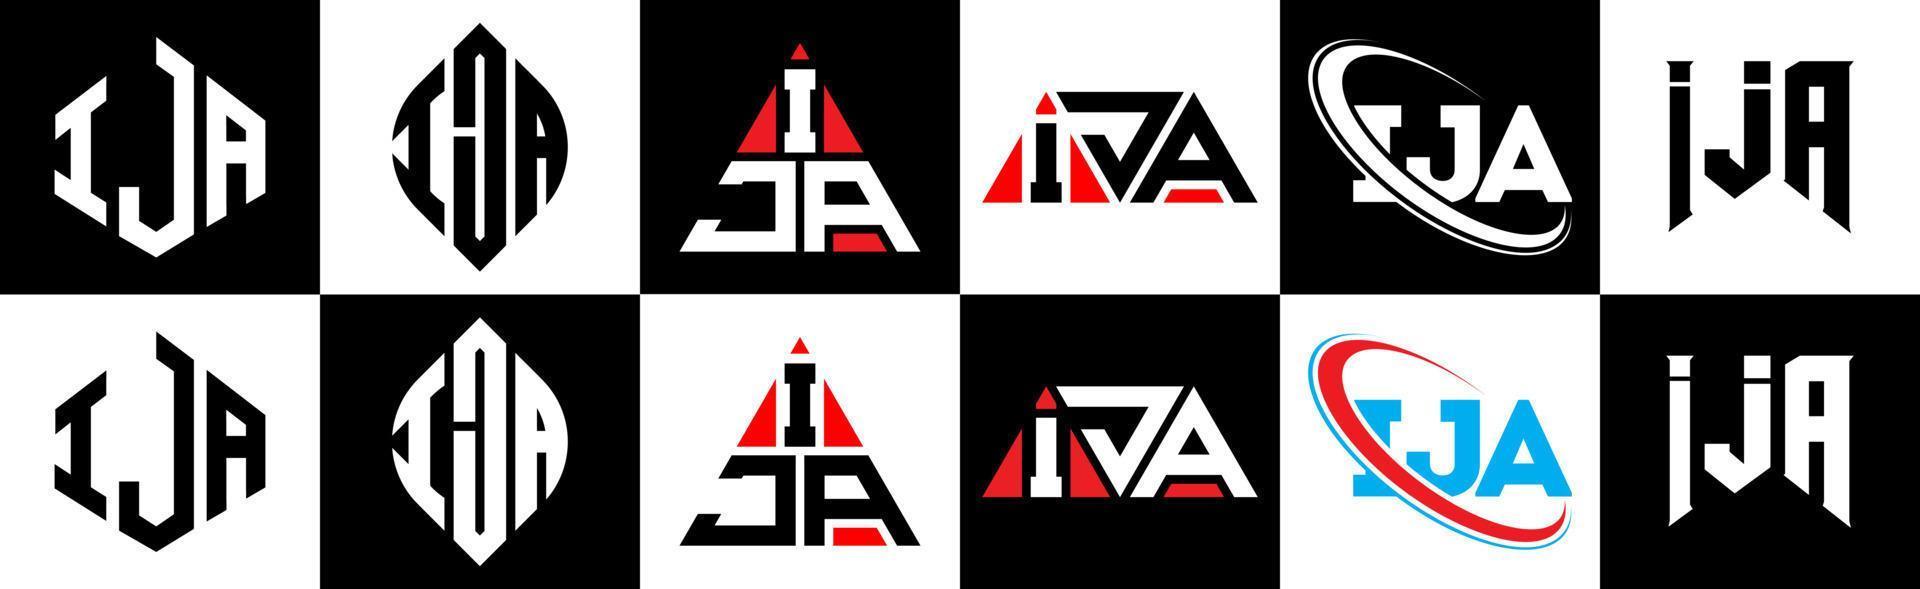 ija brief logo ontwerp in zes stijl. ija veelhoek, cirkel, driehoek, zeshoek, vlak en gemakkelijk stijl met zwart en wit kleur variatie brief logo reeks in een tekengebied. ija minimalistische en klassiek logo vector